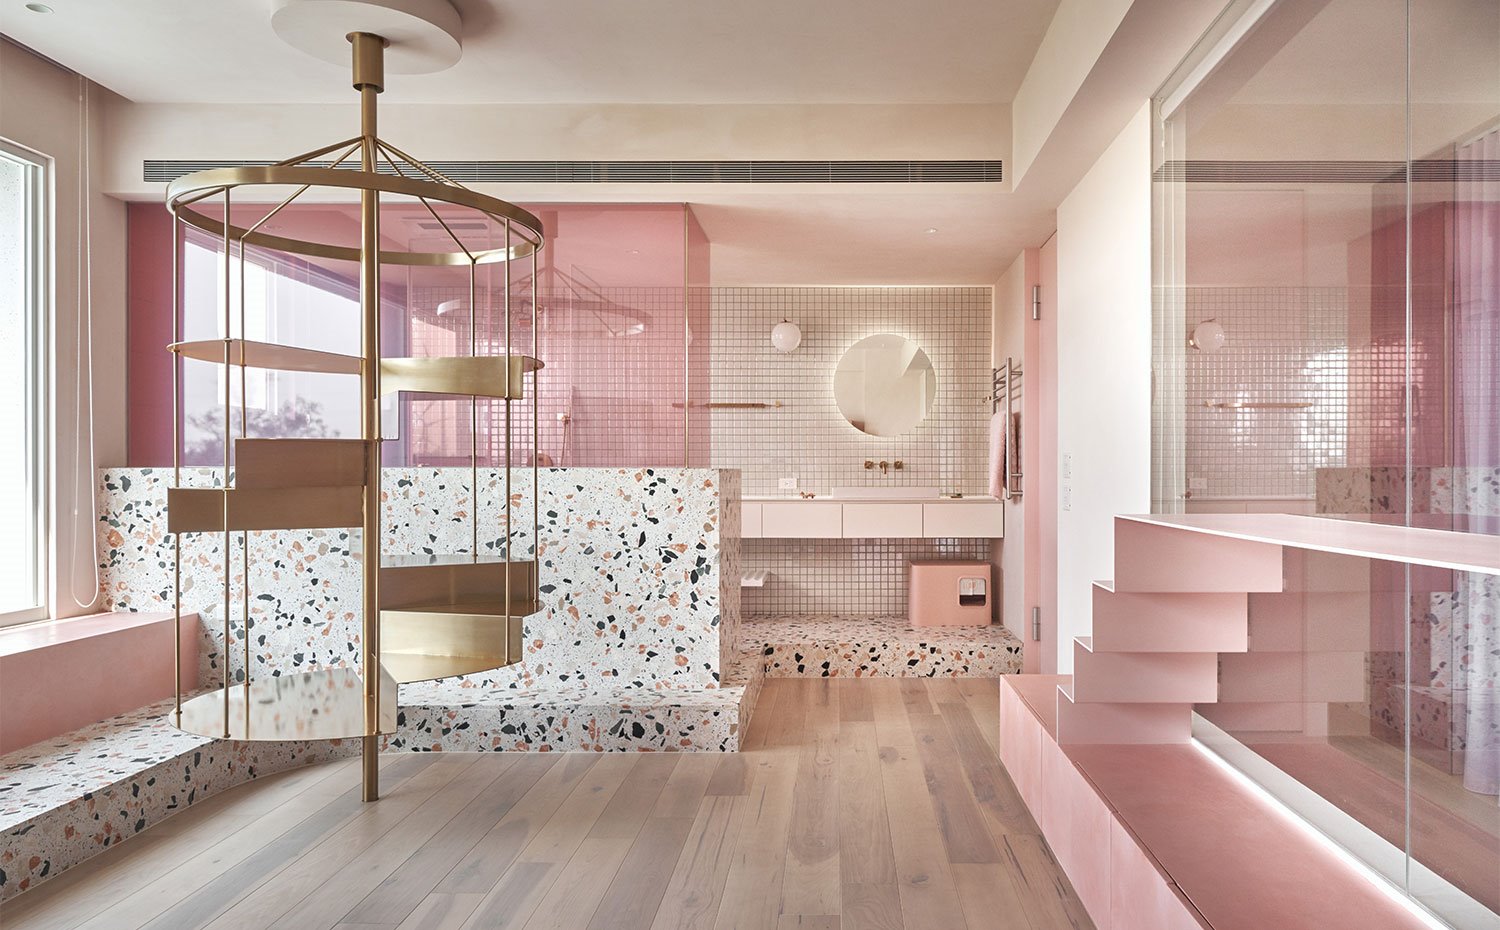 Vista general de zona de estar con cuarto de baño al fondo, detalles en rosa y suelo de madera